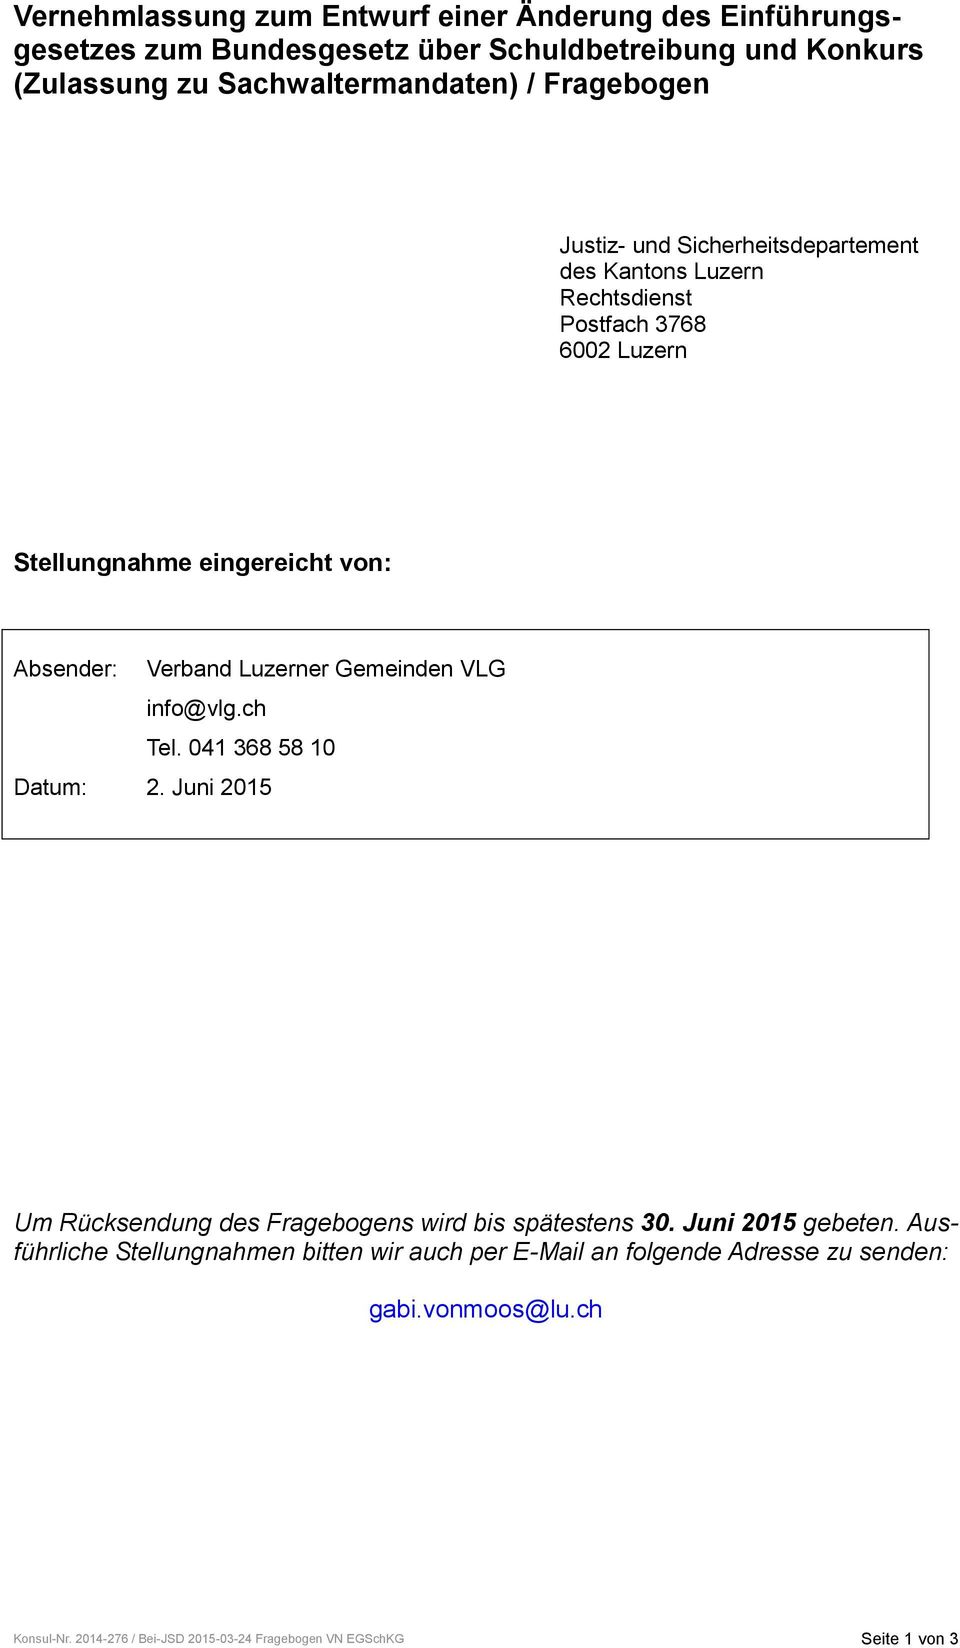 Luzerner Gemeinden VLG info@vlg.ch Tel. 041 368 58 10 Datum: 2. Juni 2015 Um Rücksendung des Fragebogens wird bis spätestens 30. Juni 2015 gebeten.